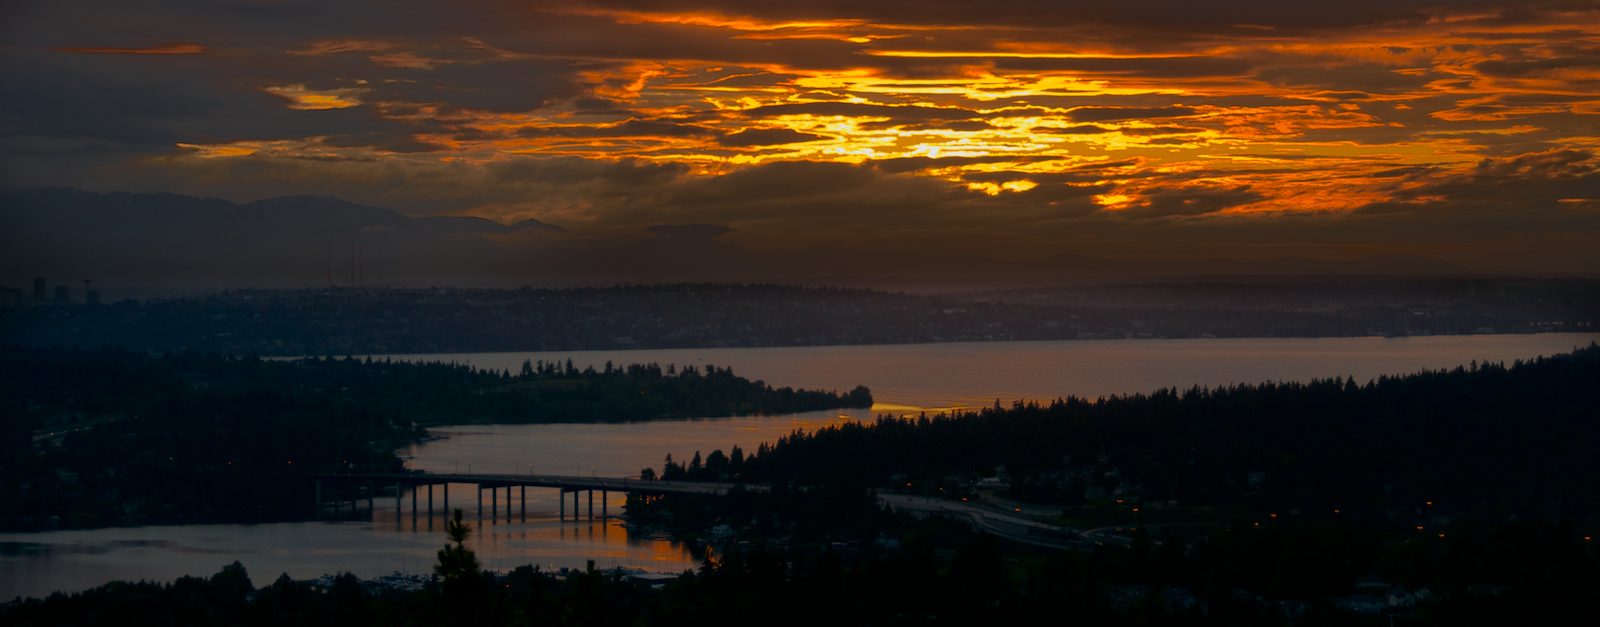 Sunset over Lake Washington